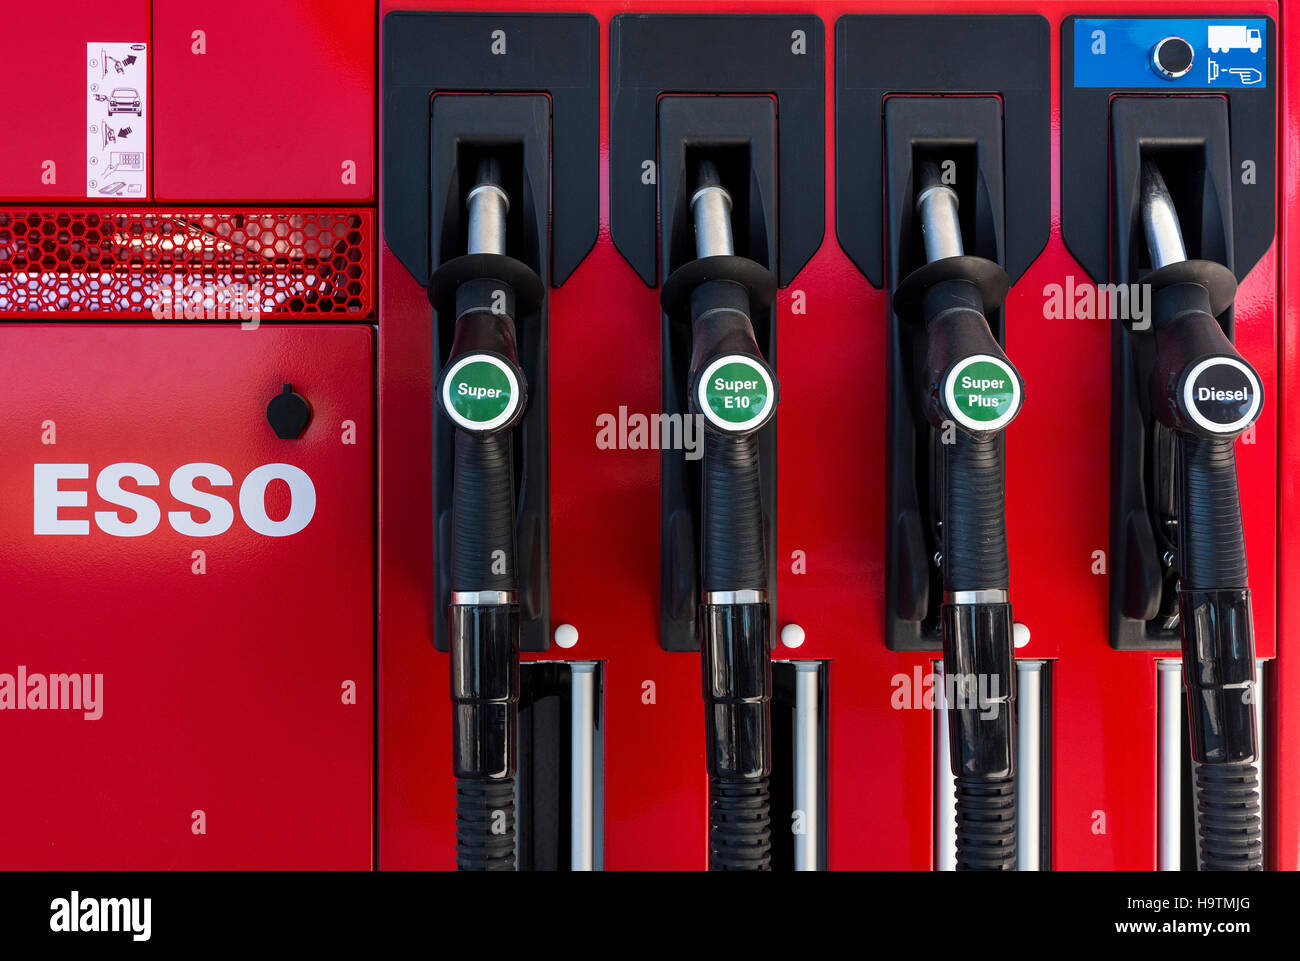 Pompe pour l'essence à une station-service Esso, Allemagne Banque D'Images